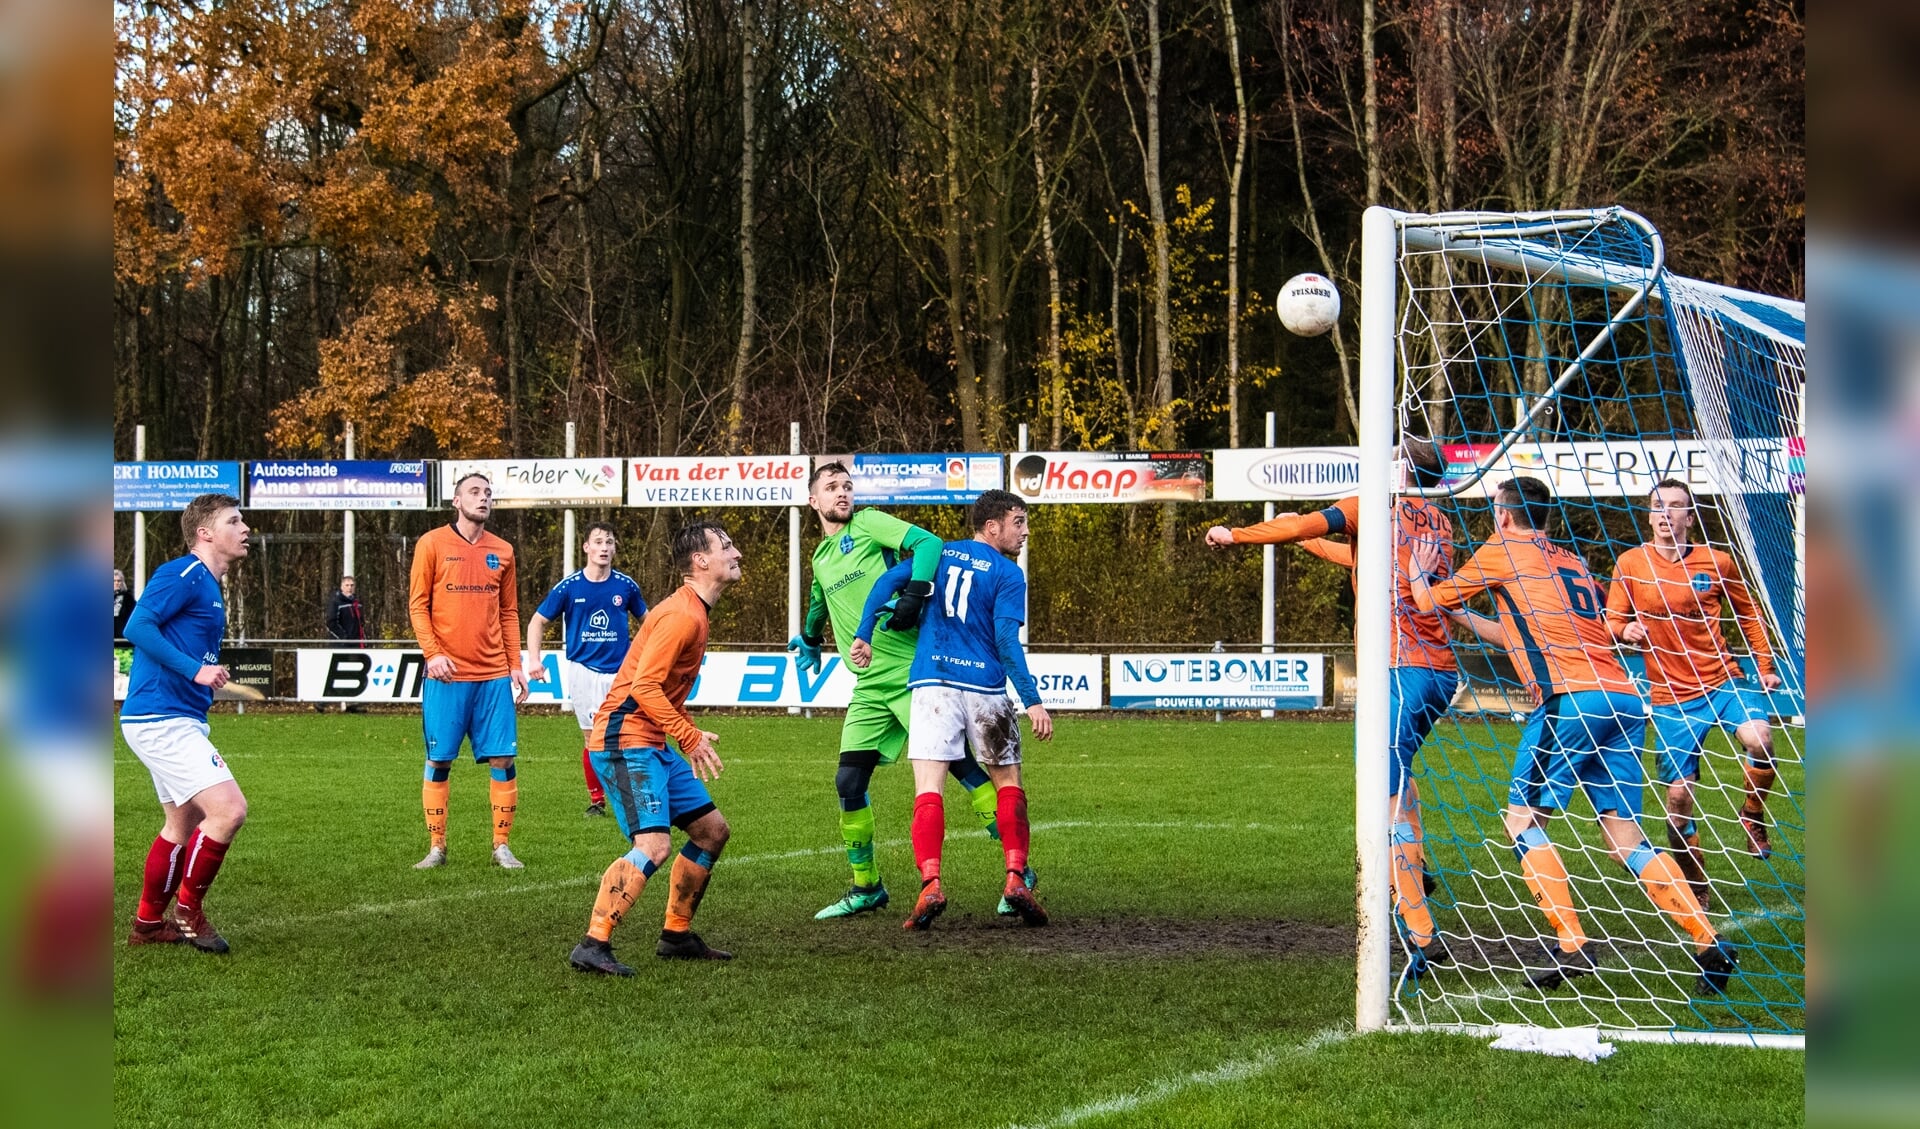 Drie verdedigers op de doellijn assisteren keeper Arjen Tolman van FC Burgum tegen 't Fean'58 (blauw-wit tenue).